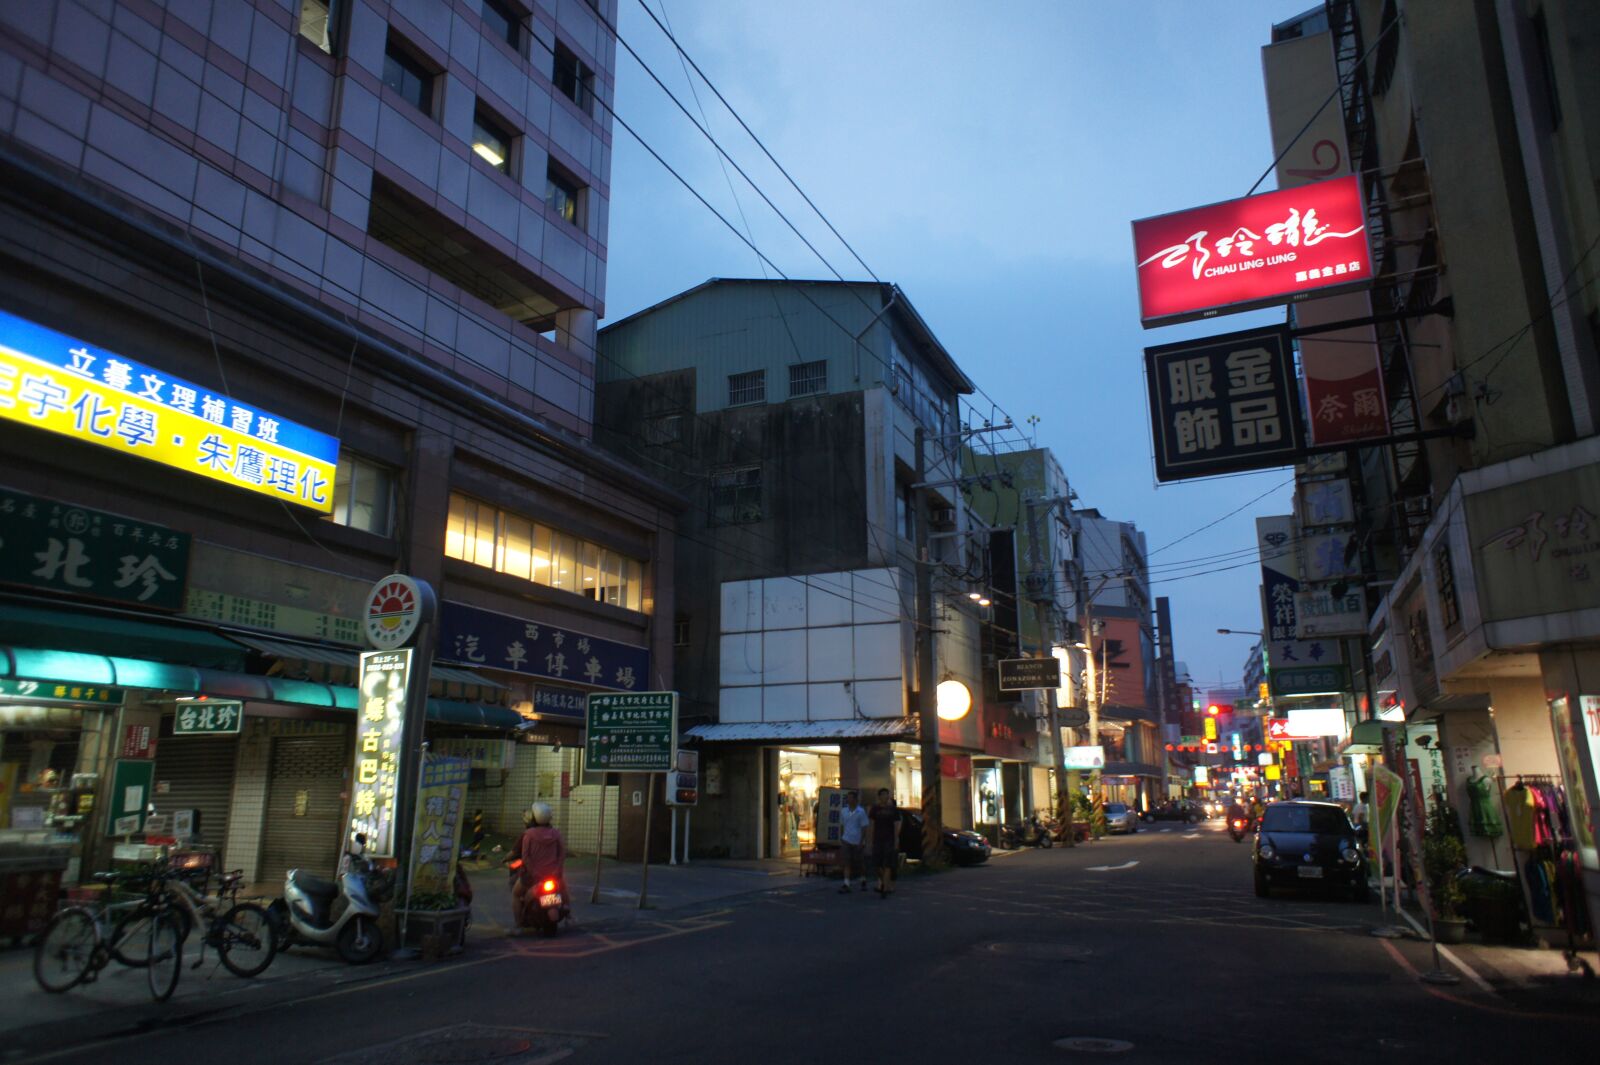 Sony NEX-5C + Sony E 16mm F2.8 sample photo. City, taiwan, the night photography